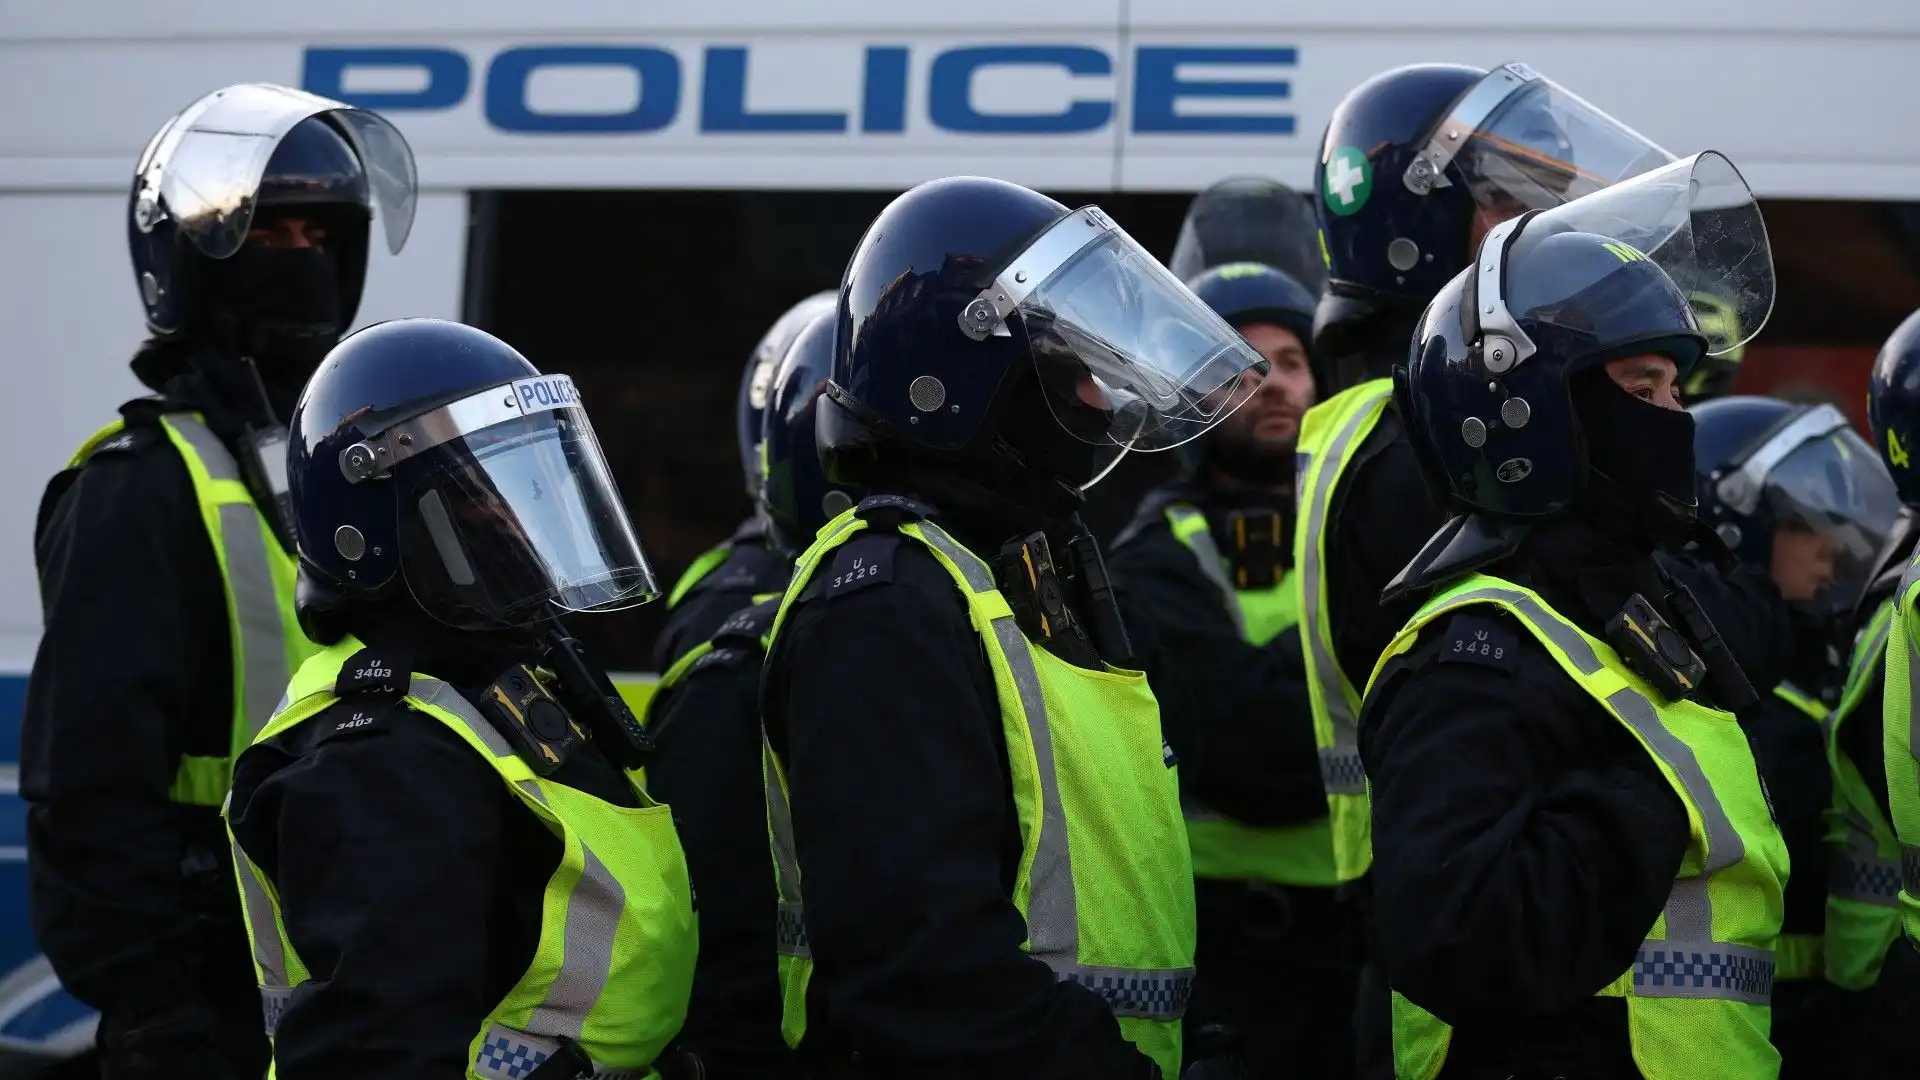 Londra blindata dalla polizia per la partita: le immagini